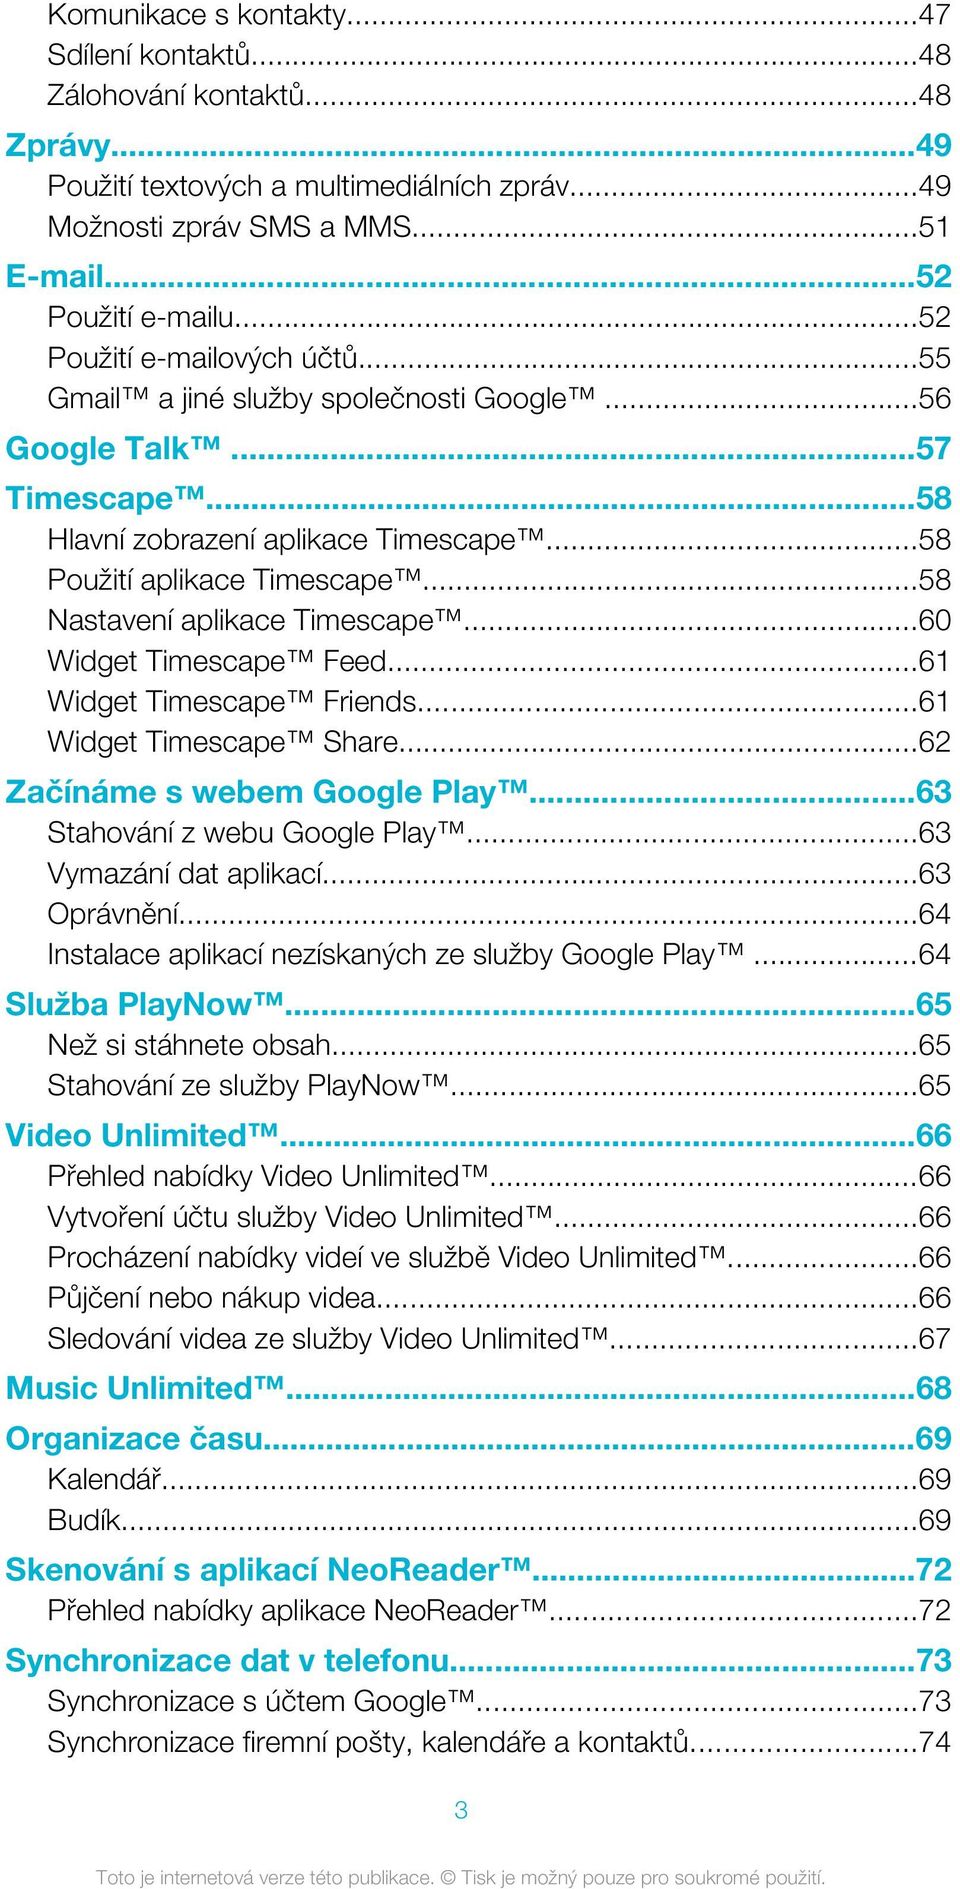 ..58 Nastavení aplikace Timescape...60 Widget Timescape Feed...61 Widget Timescape Friends...61 Widget Timescape Share...62 Začínáme s webem Google Play...63 Stahování z webu Google Play.